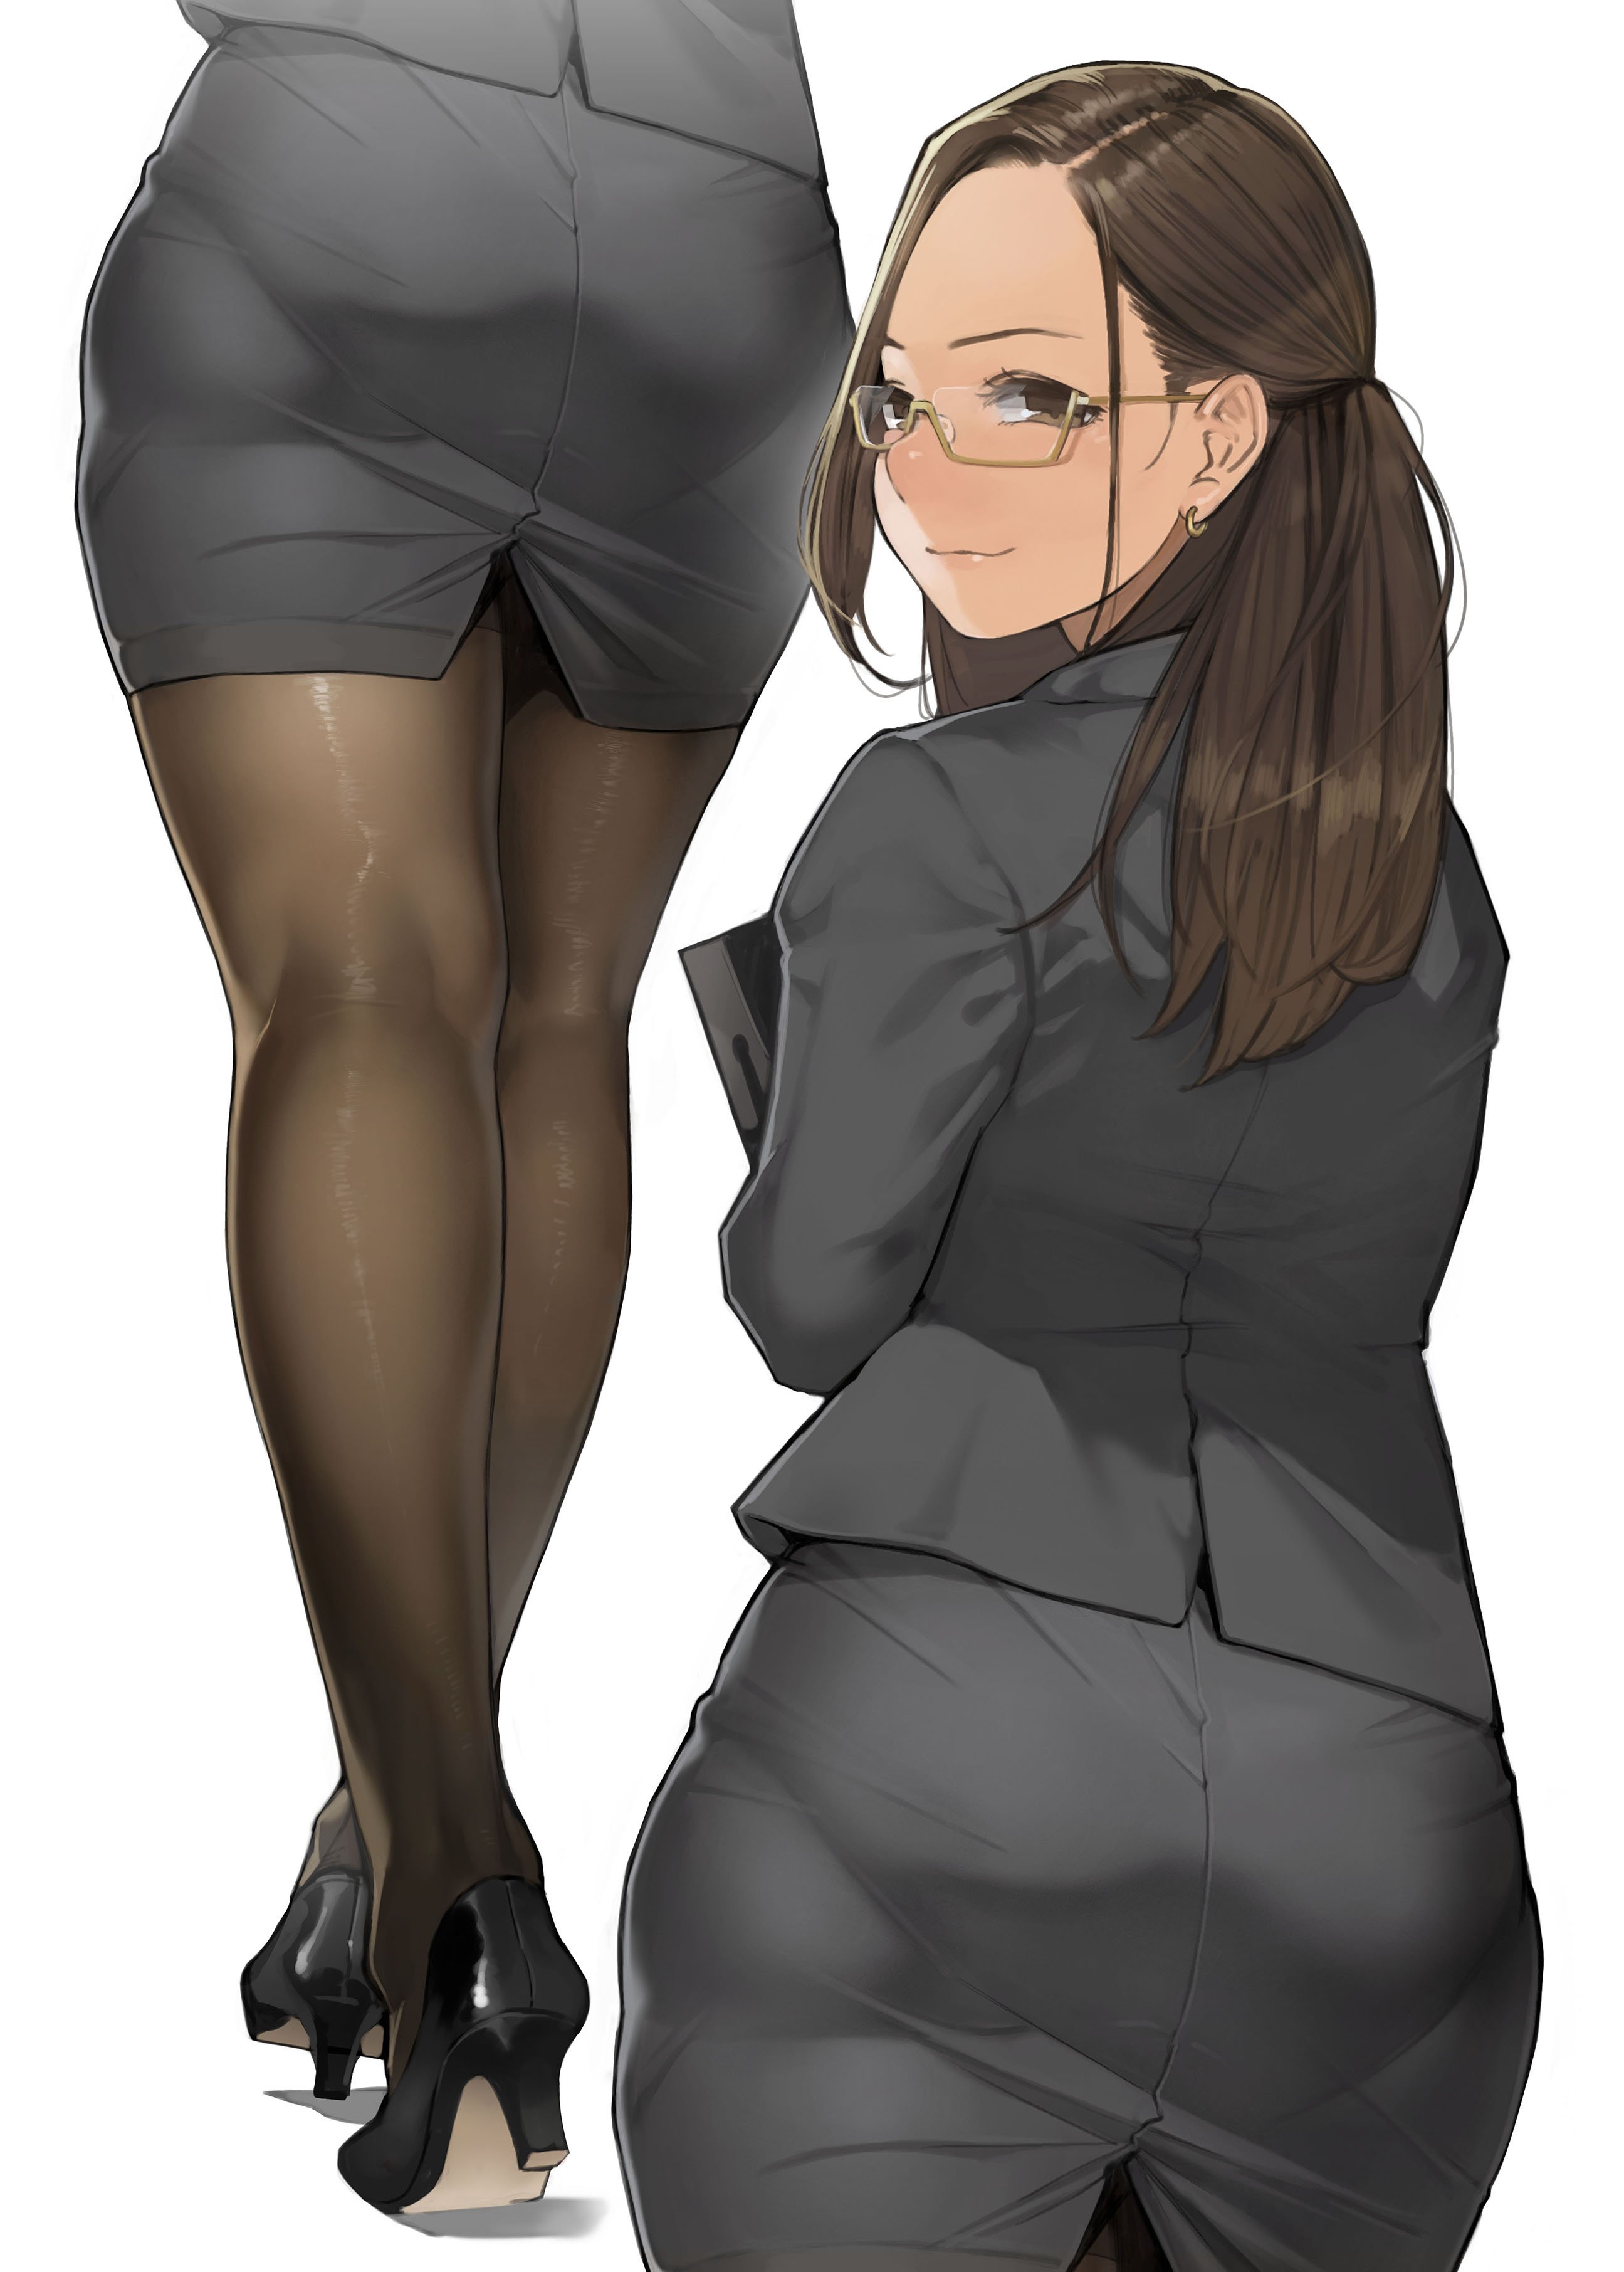 yom miru tights okuzumi yuiko business suit heels megane pantyhose |  #452688 | yande.re